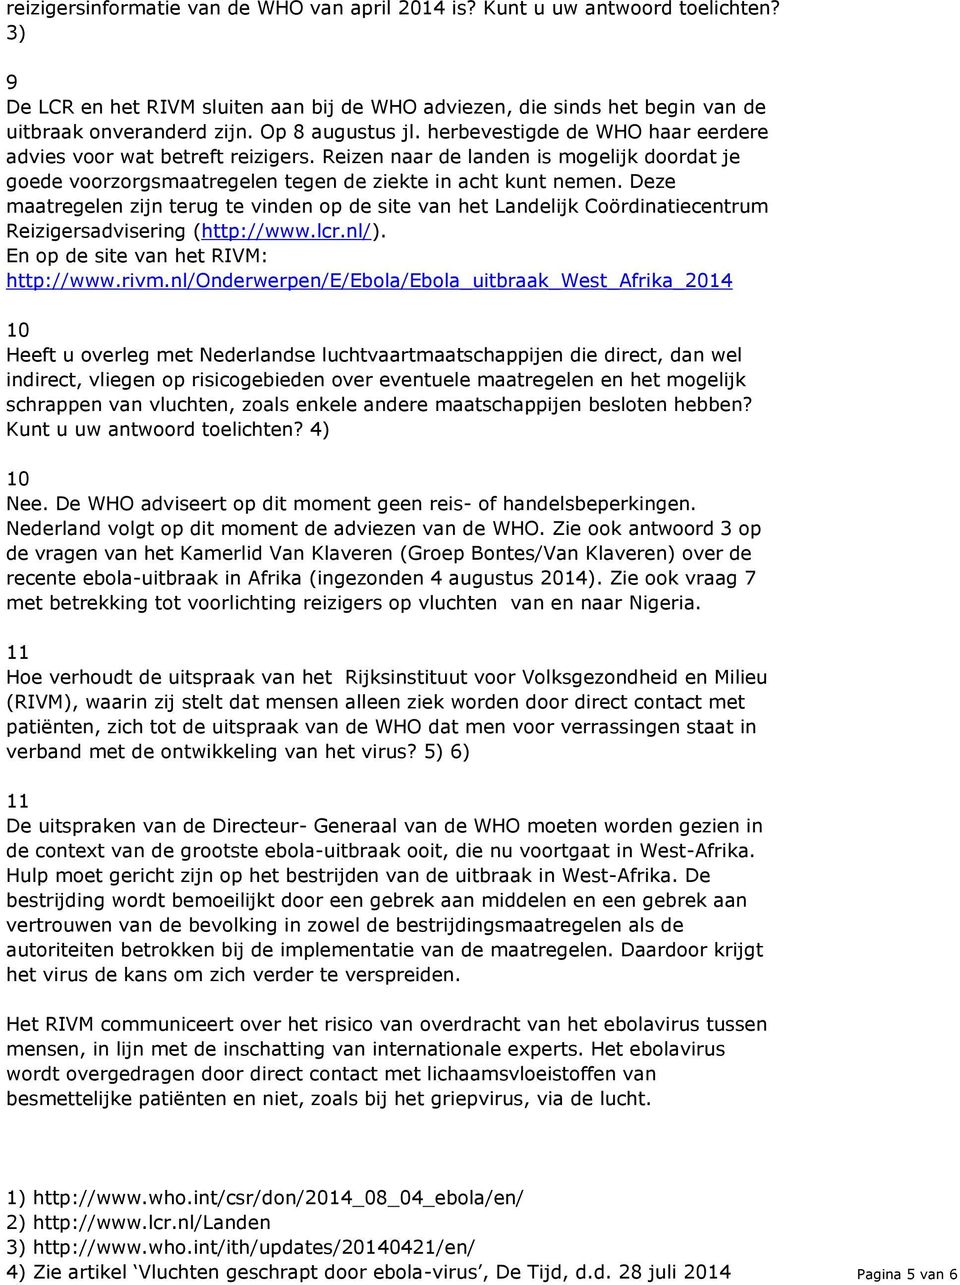 Deze maatregelen zijn terug te vinden op de site van het Landelijk Coördinatiecentrum Reizigersadvisering (http://www.lcr.nl/). En op de site van het RIVM: http://www.rivm.